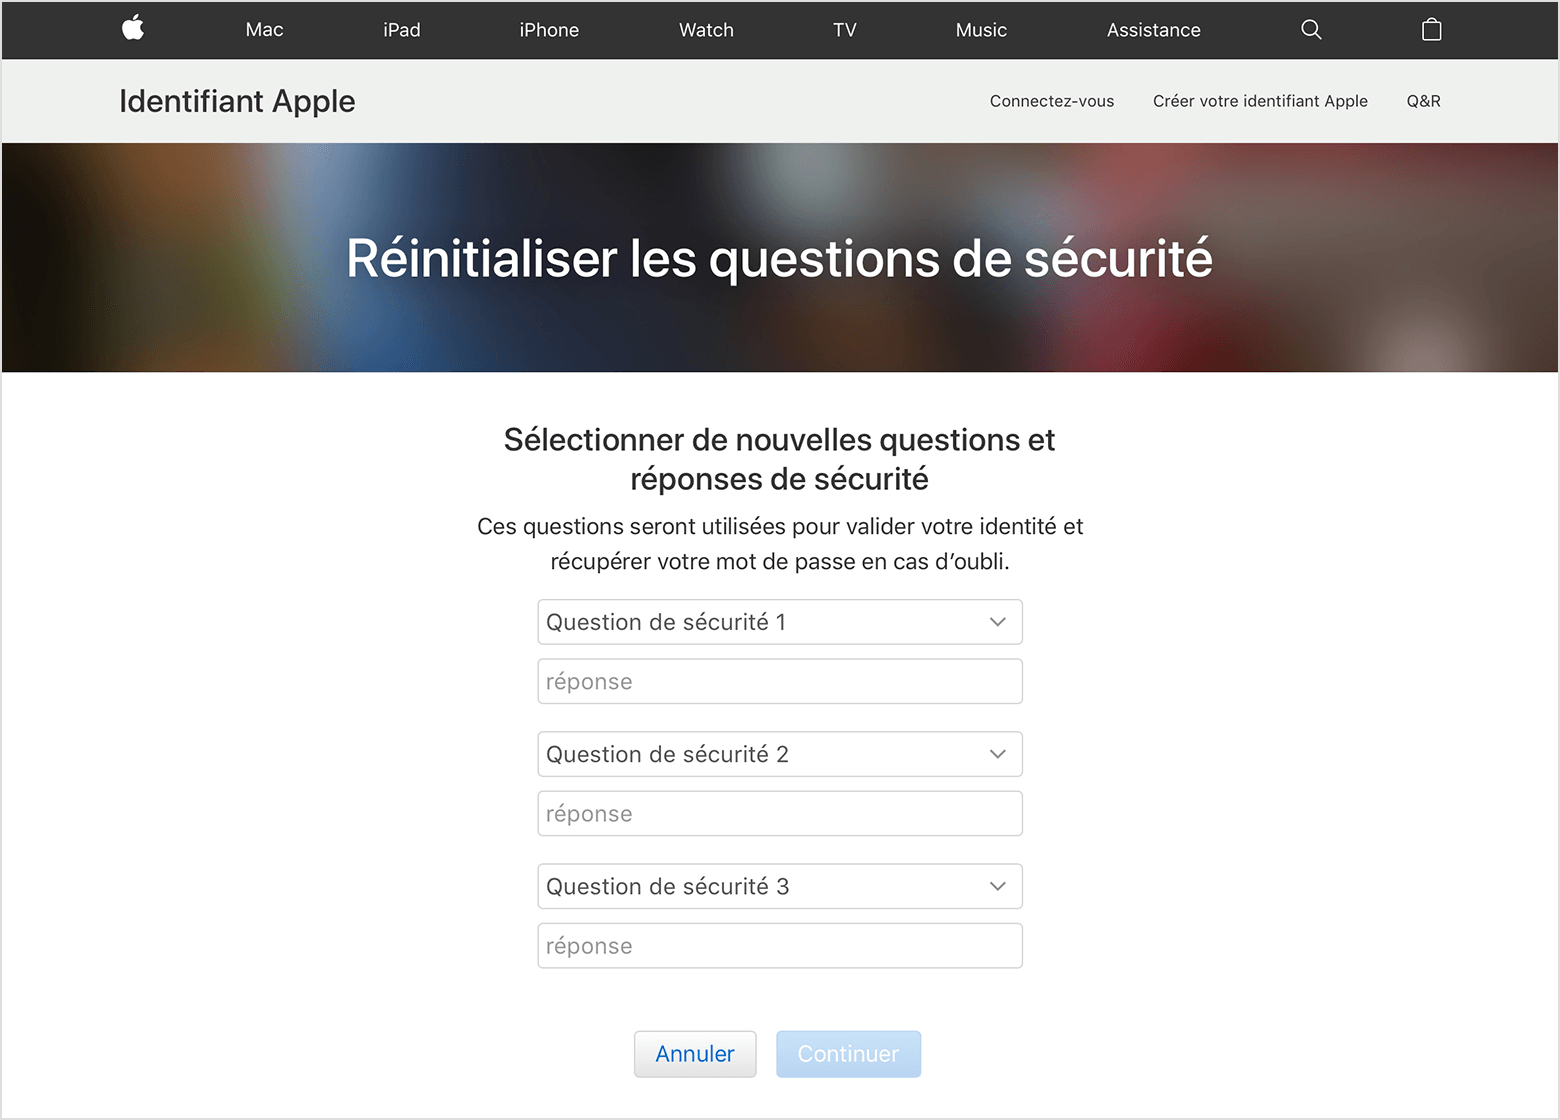 Как восстановить ответ на контрольный вопрос. Изменить контрольные вопросы Apple. Сброс контрольных вопросов. Восстановление пароля. Контрольные вопросы на айфоне.